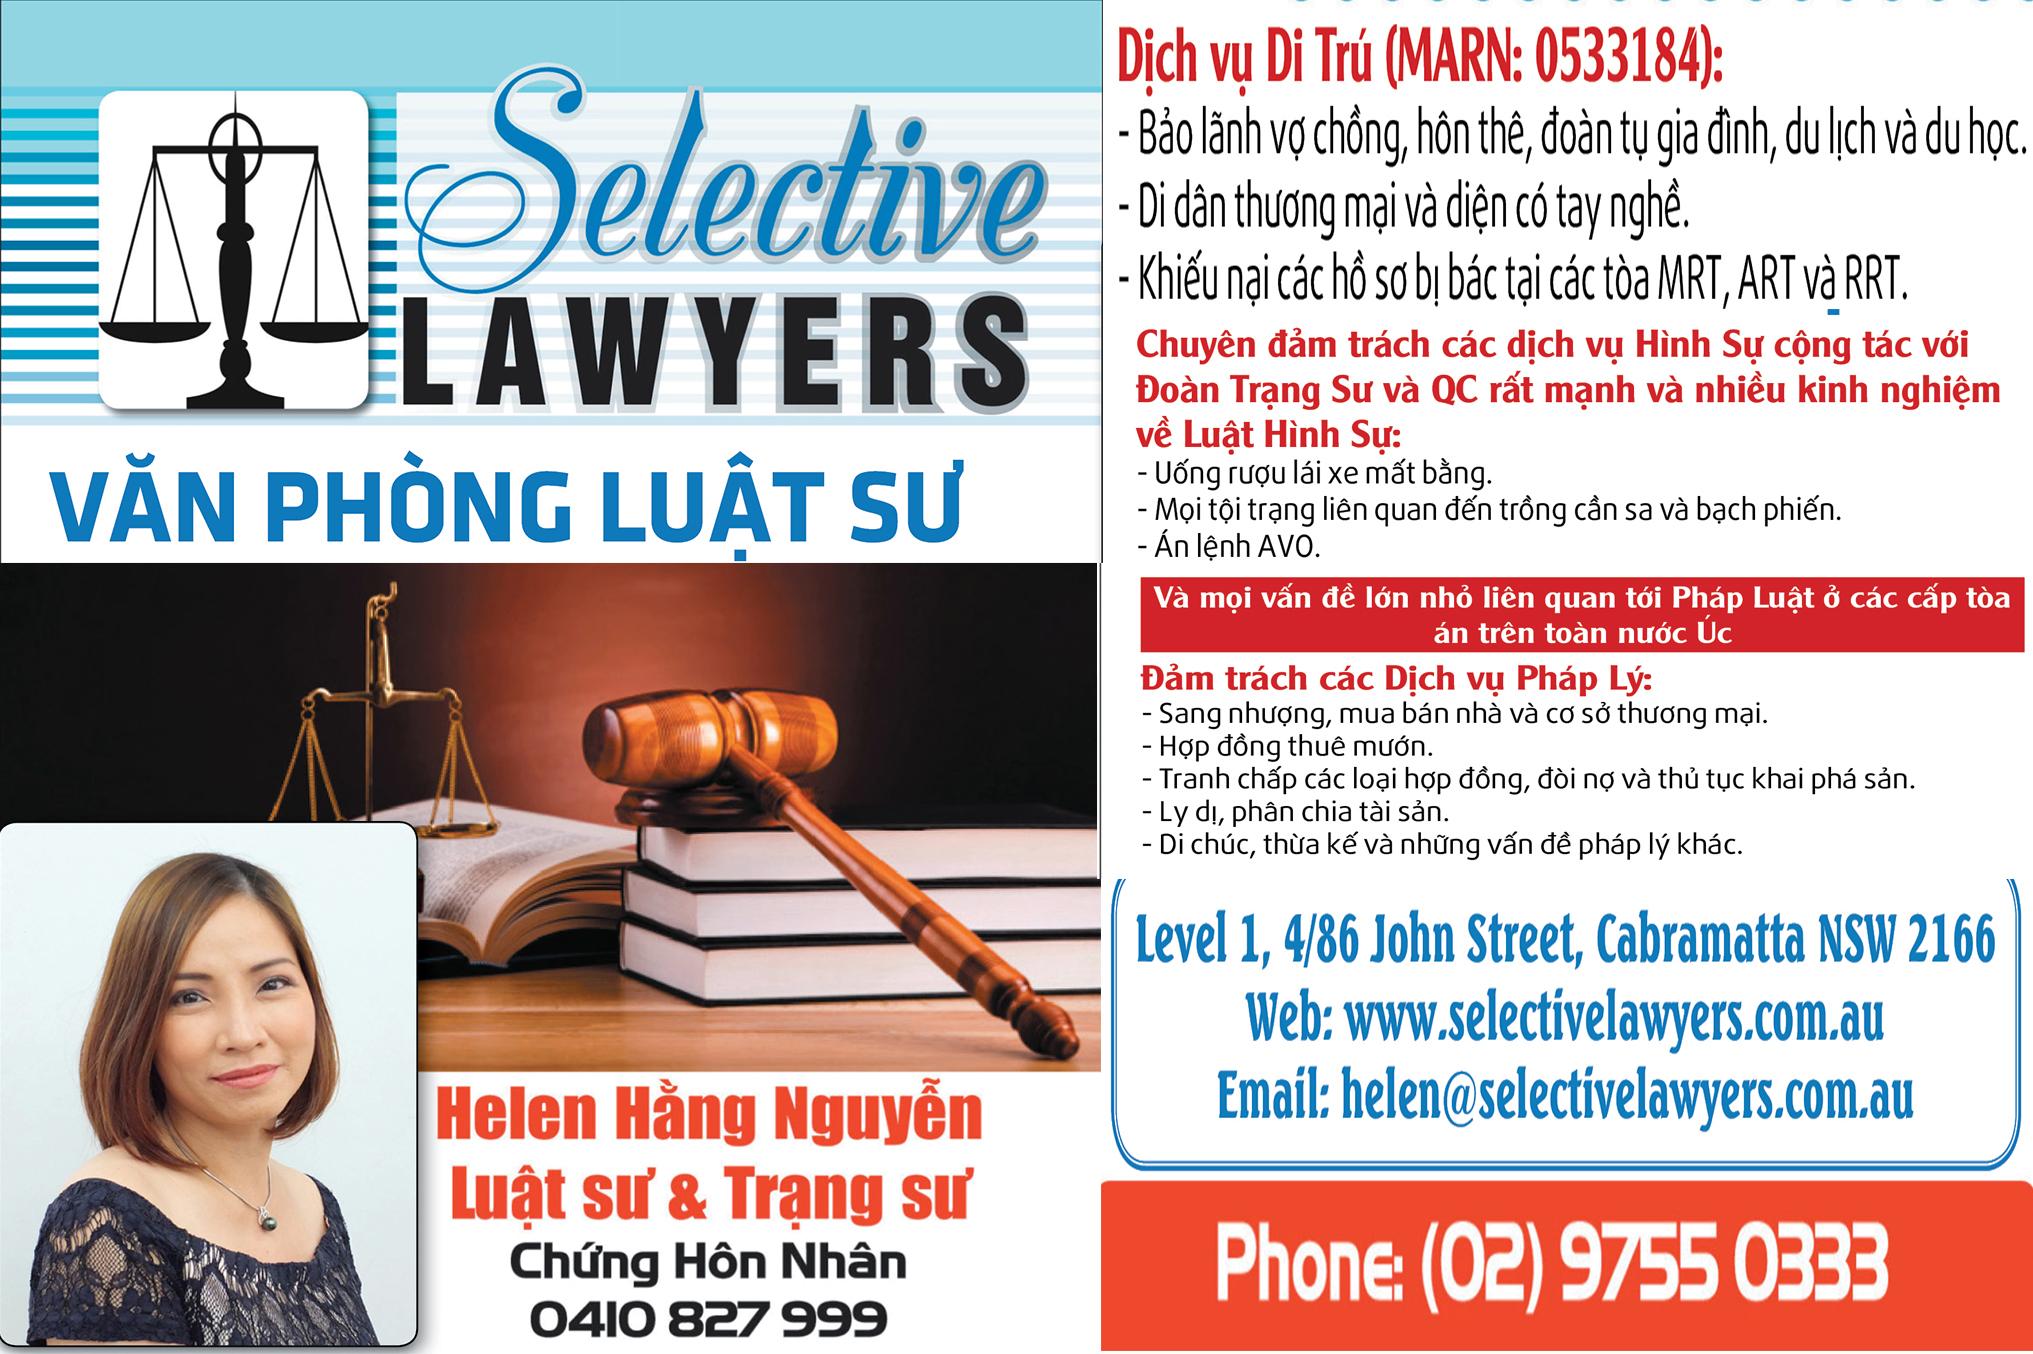 Selective Lawyer